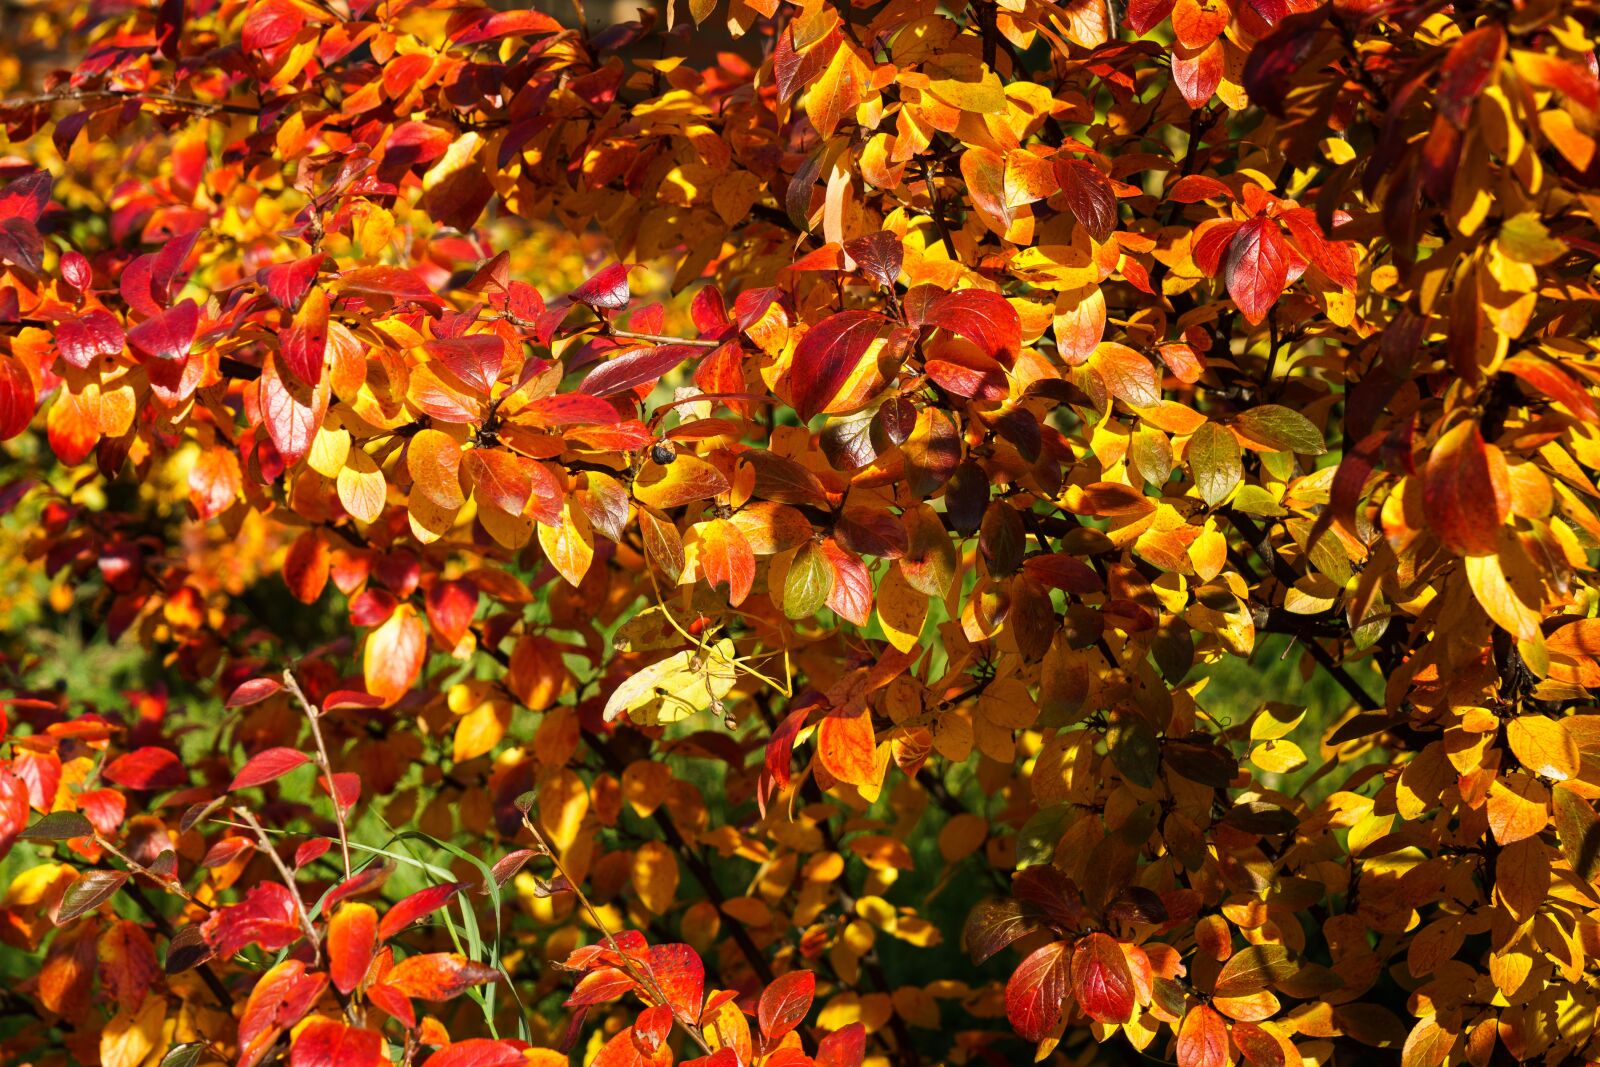 Sony a6300 + Sony Vario Tessar T* FE 24-70mm F4 ZA OSS sample photo. Autumn, foliage, colorful photography